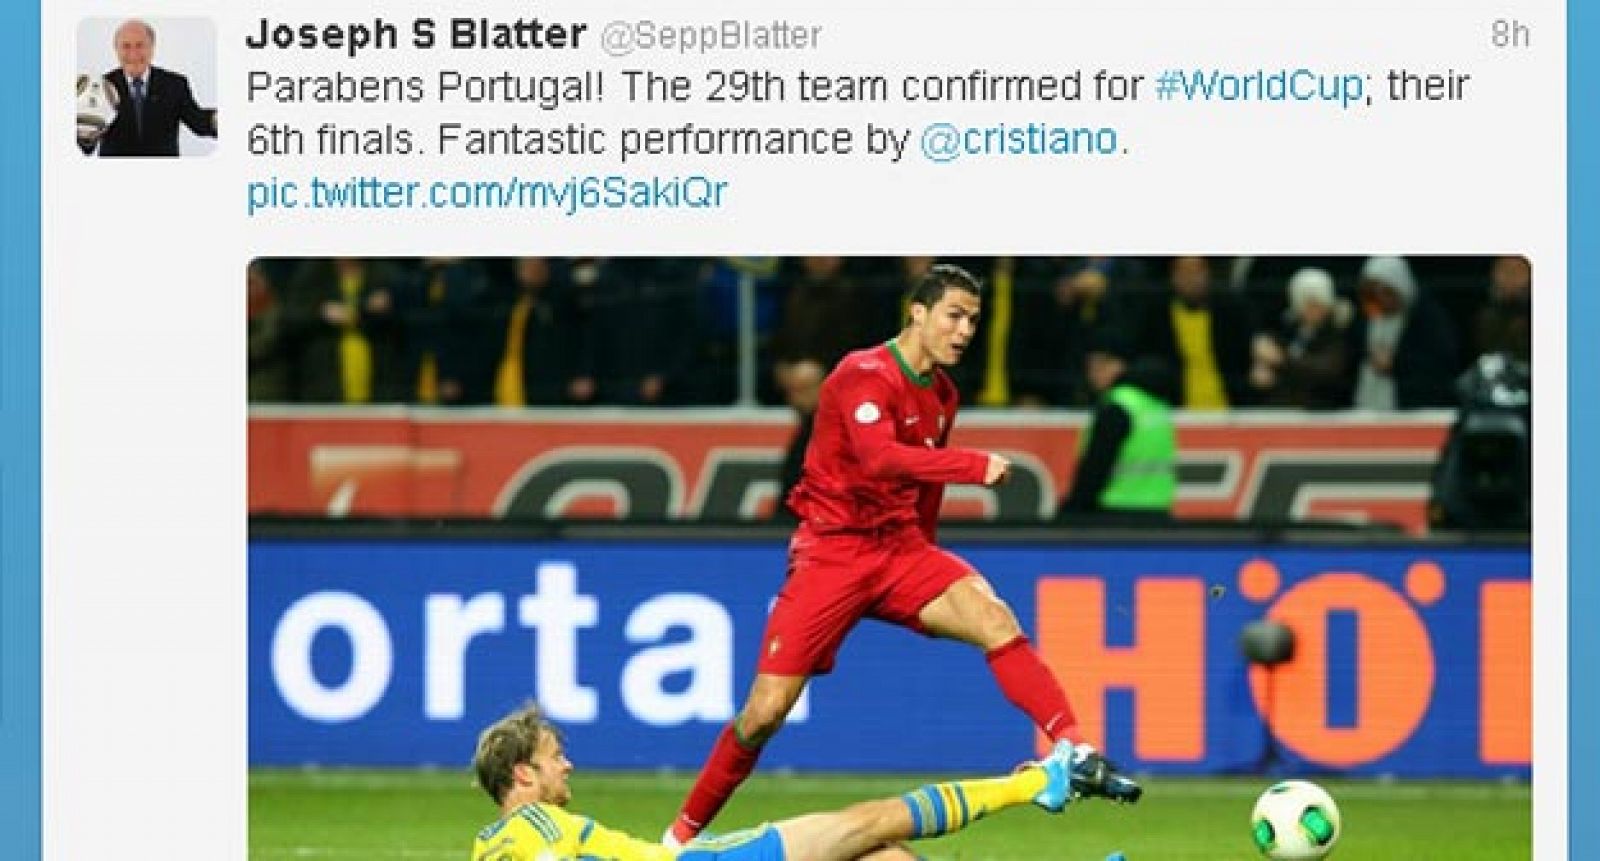 Mensaje que Blatter ha colgado en su Twitter